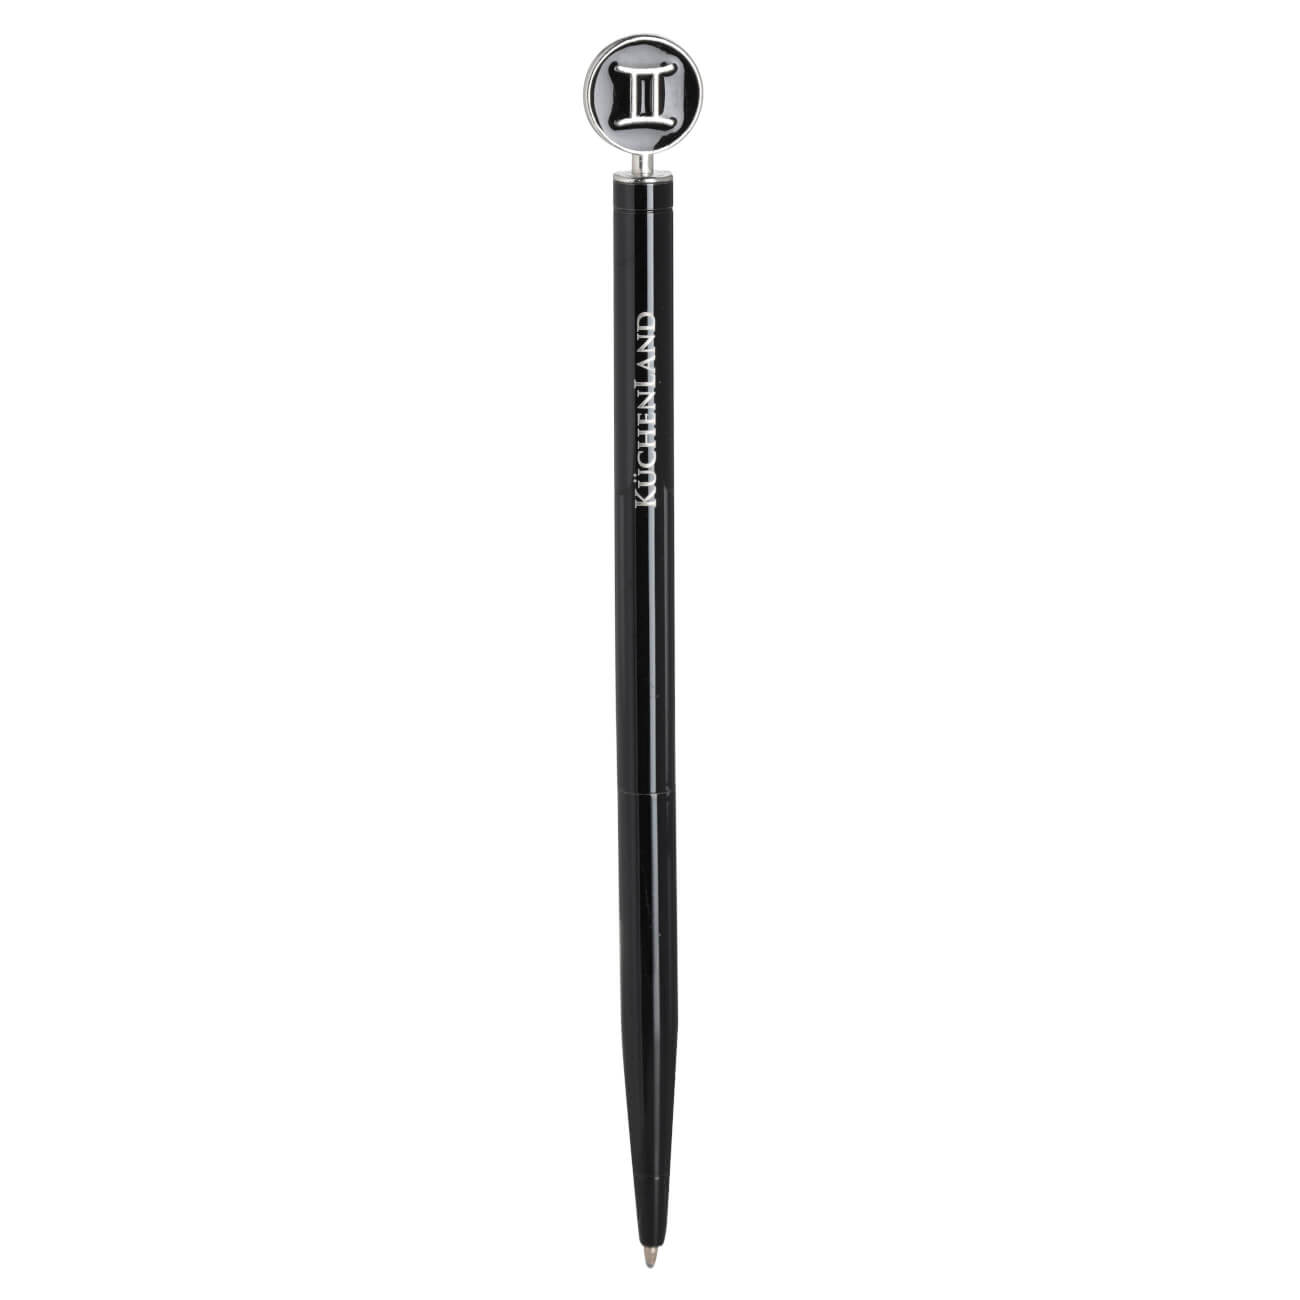 Ручка шариковая, 15 см, с фигуркой, сталь, черно-серебристая, Близнецы, Zodiac